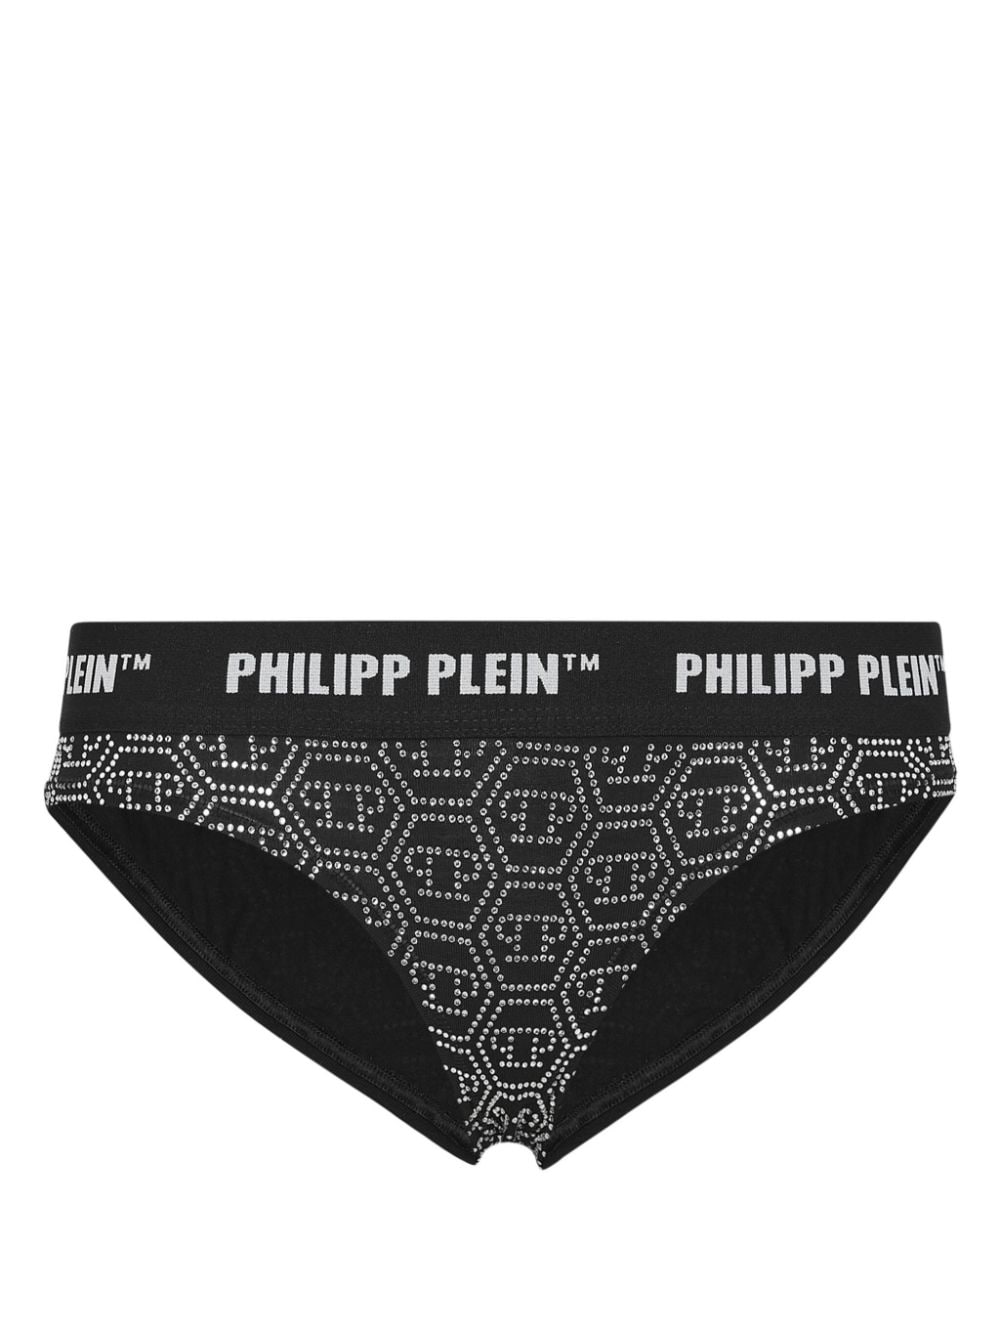 Philipp Plein logo-printed brief - Black von Philipp Plein